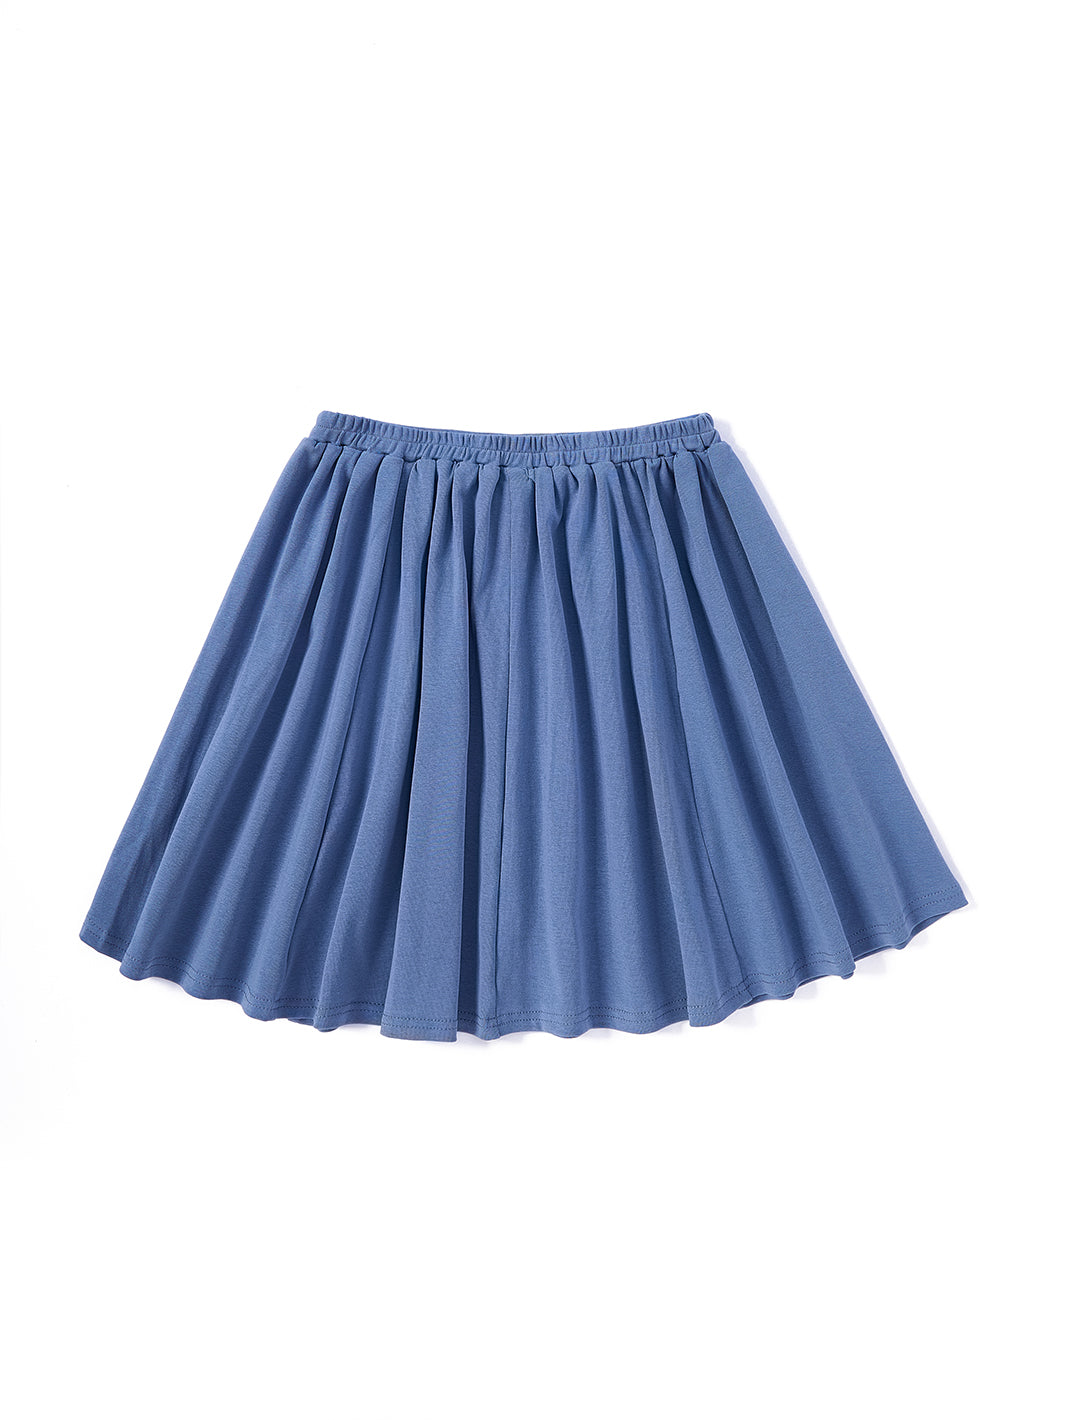 Basic Rib Flare Skirt - Deep Blue